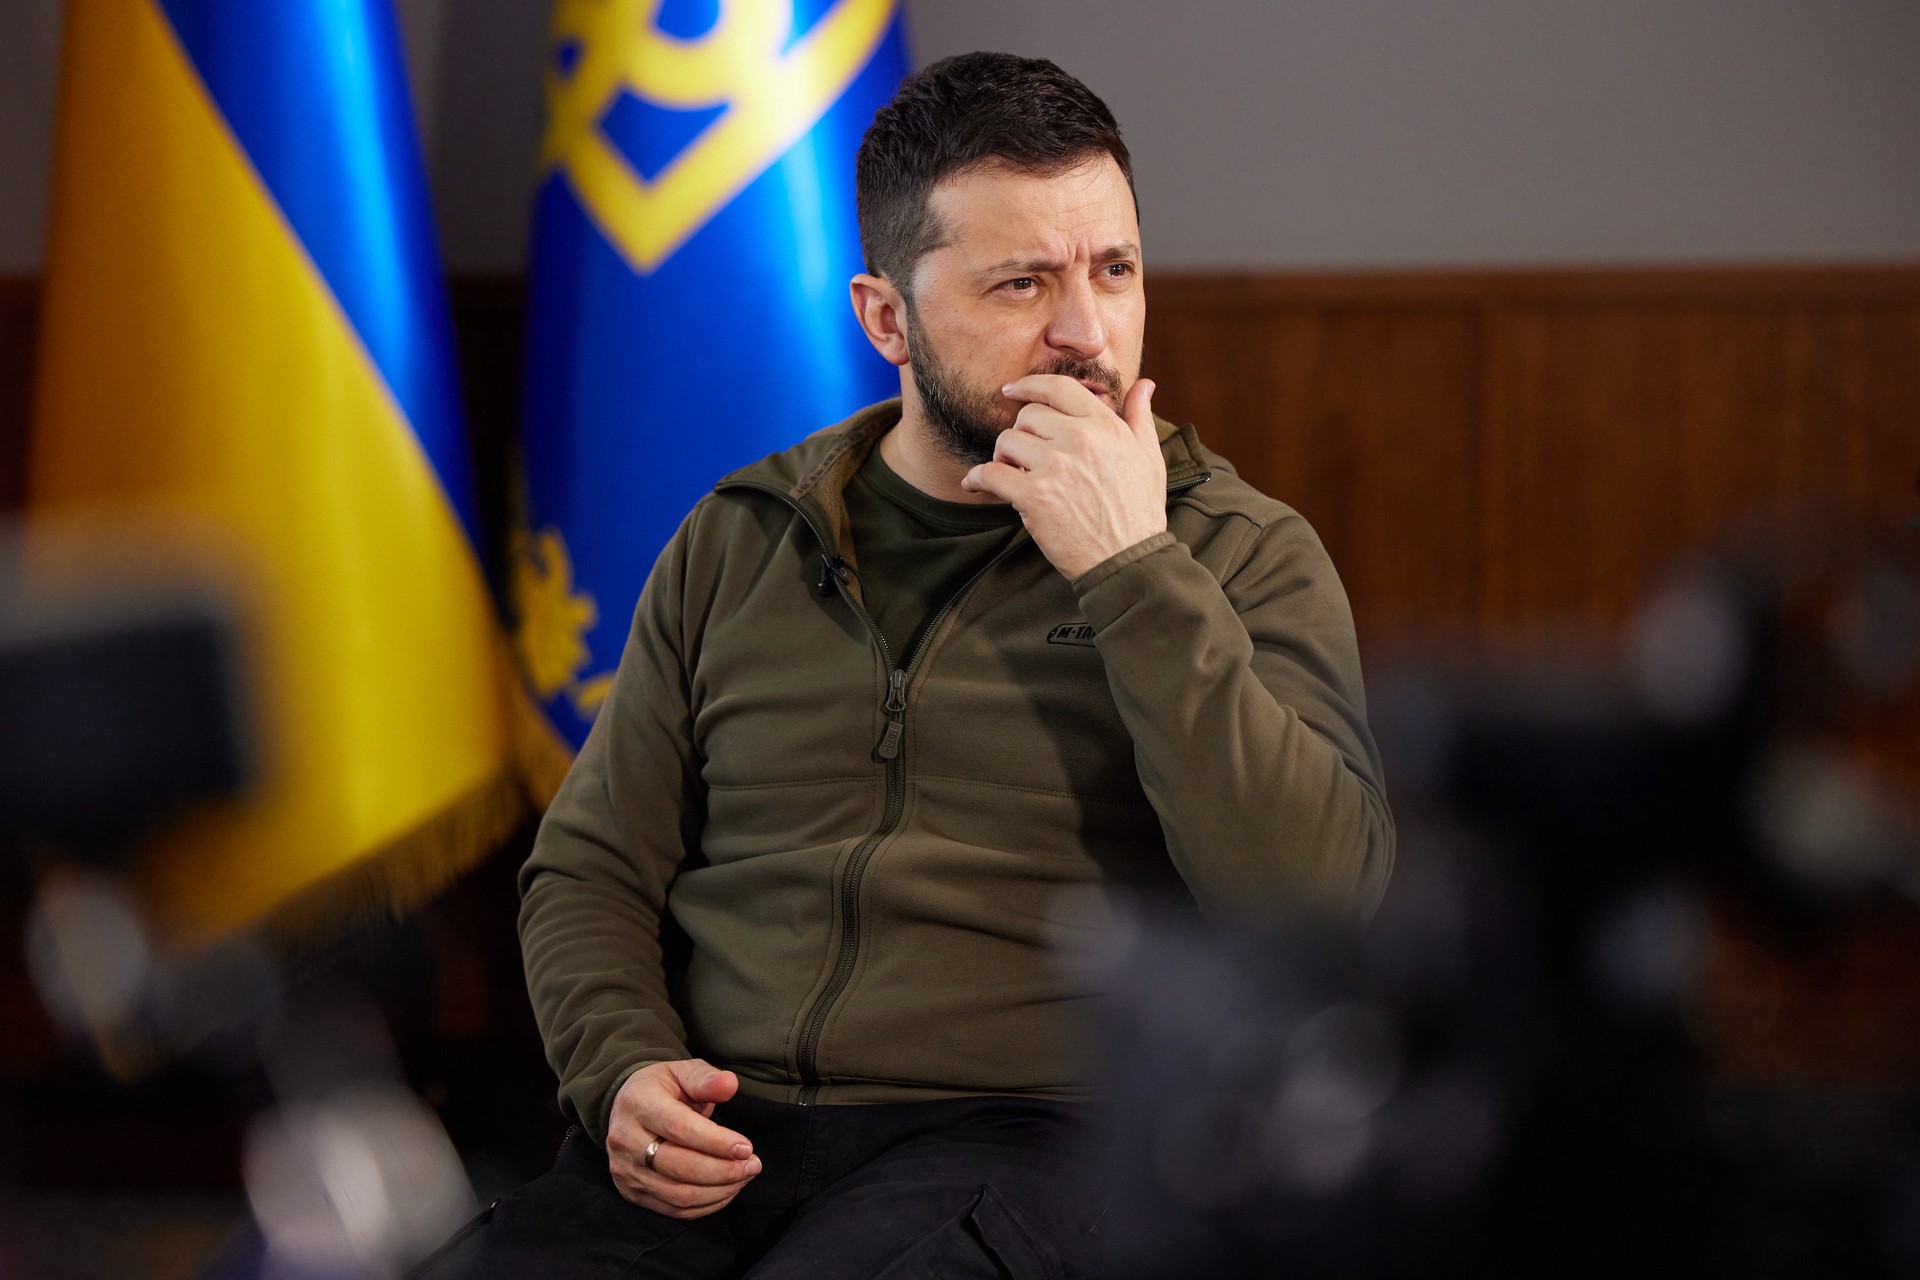 G4Media: Парламент Румынии может отменить выступление Зеленского в рамках его визита в Бухарест